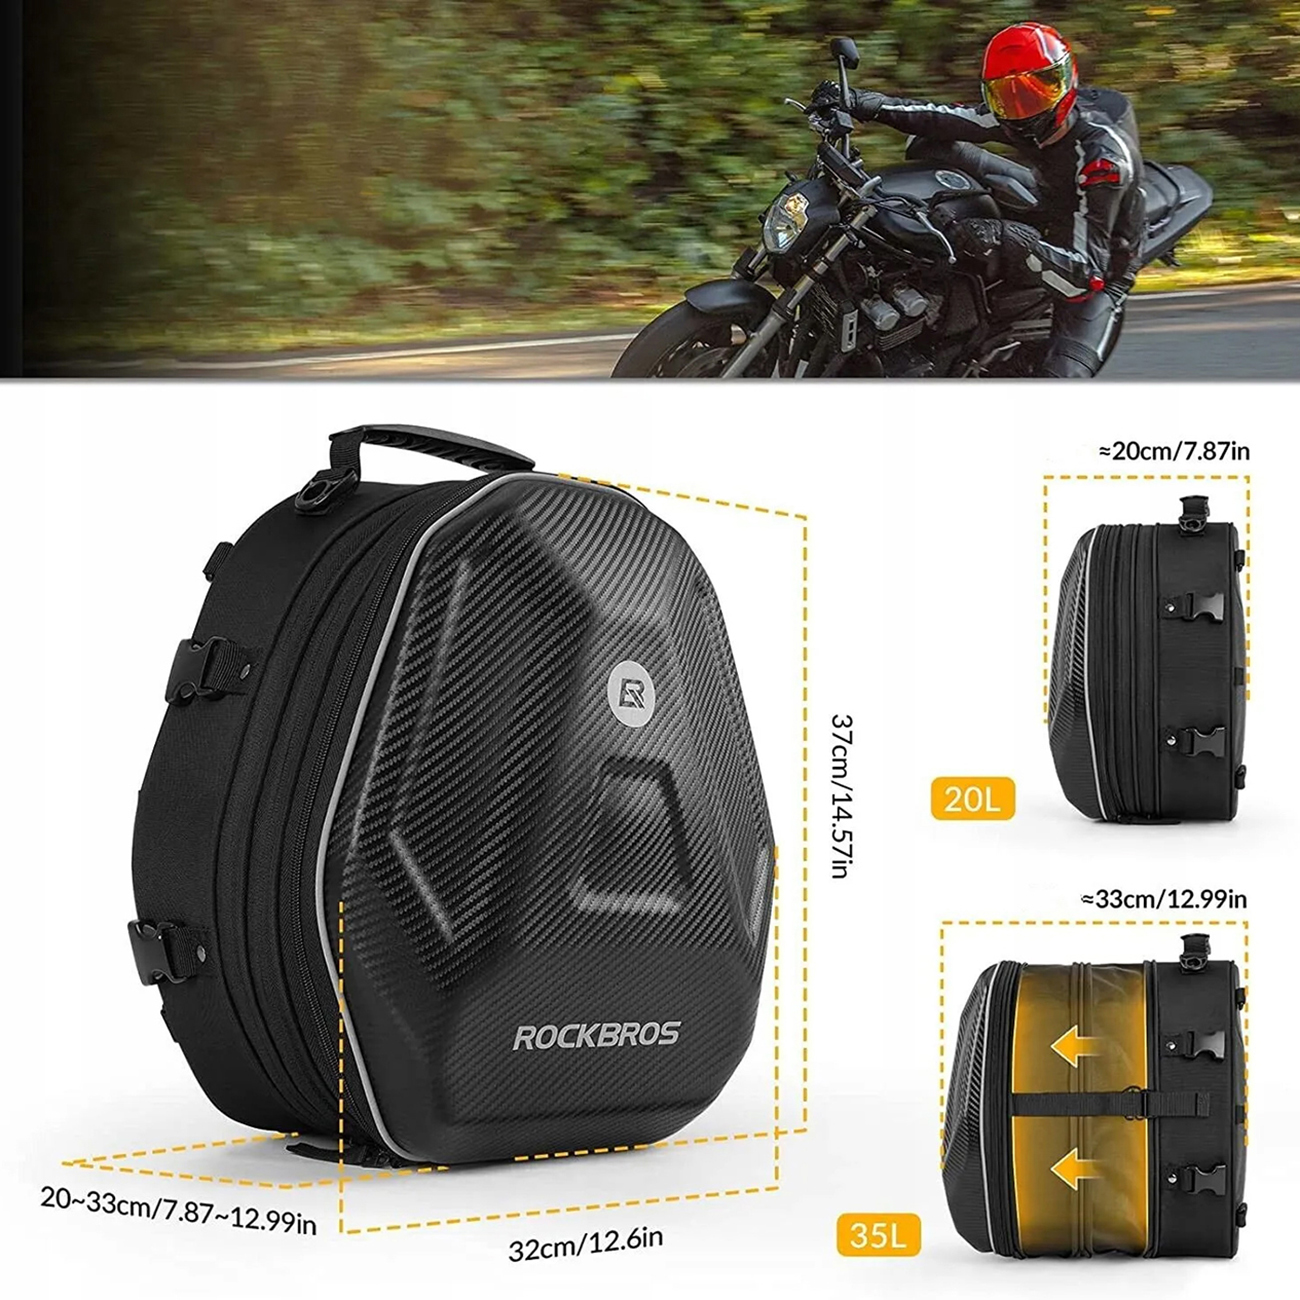 Pokazanie wymiarów oraz pojemności jaką posiada torba motocyklowa Rockbros 30140026001